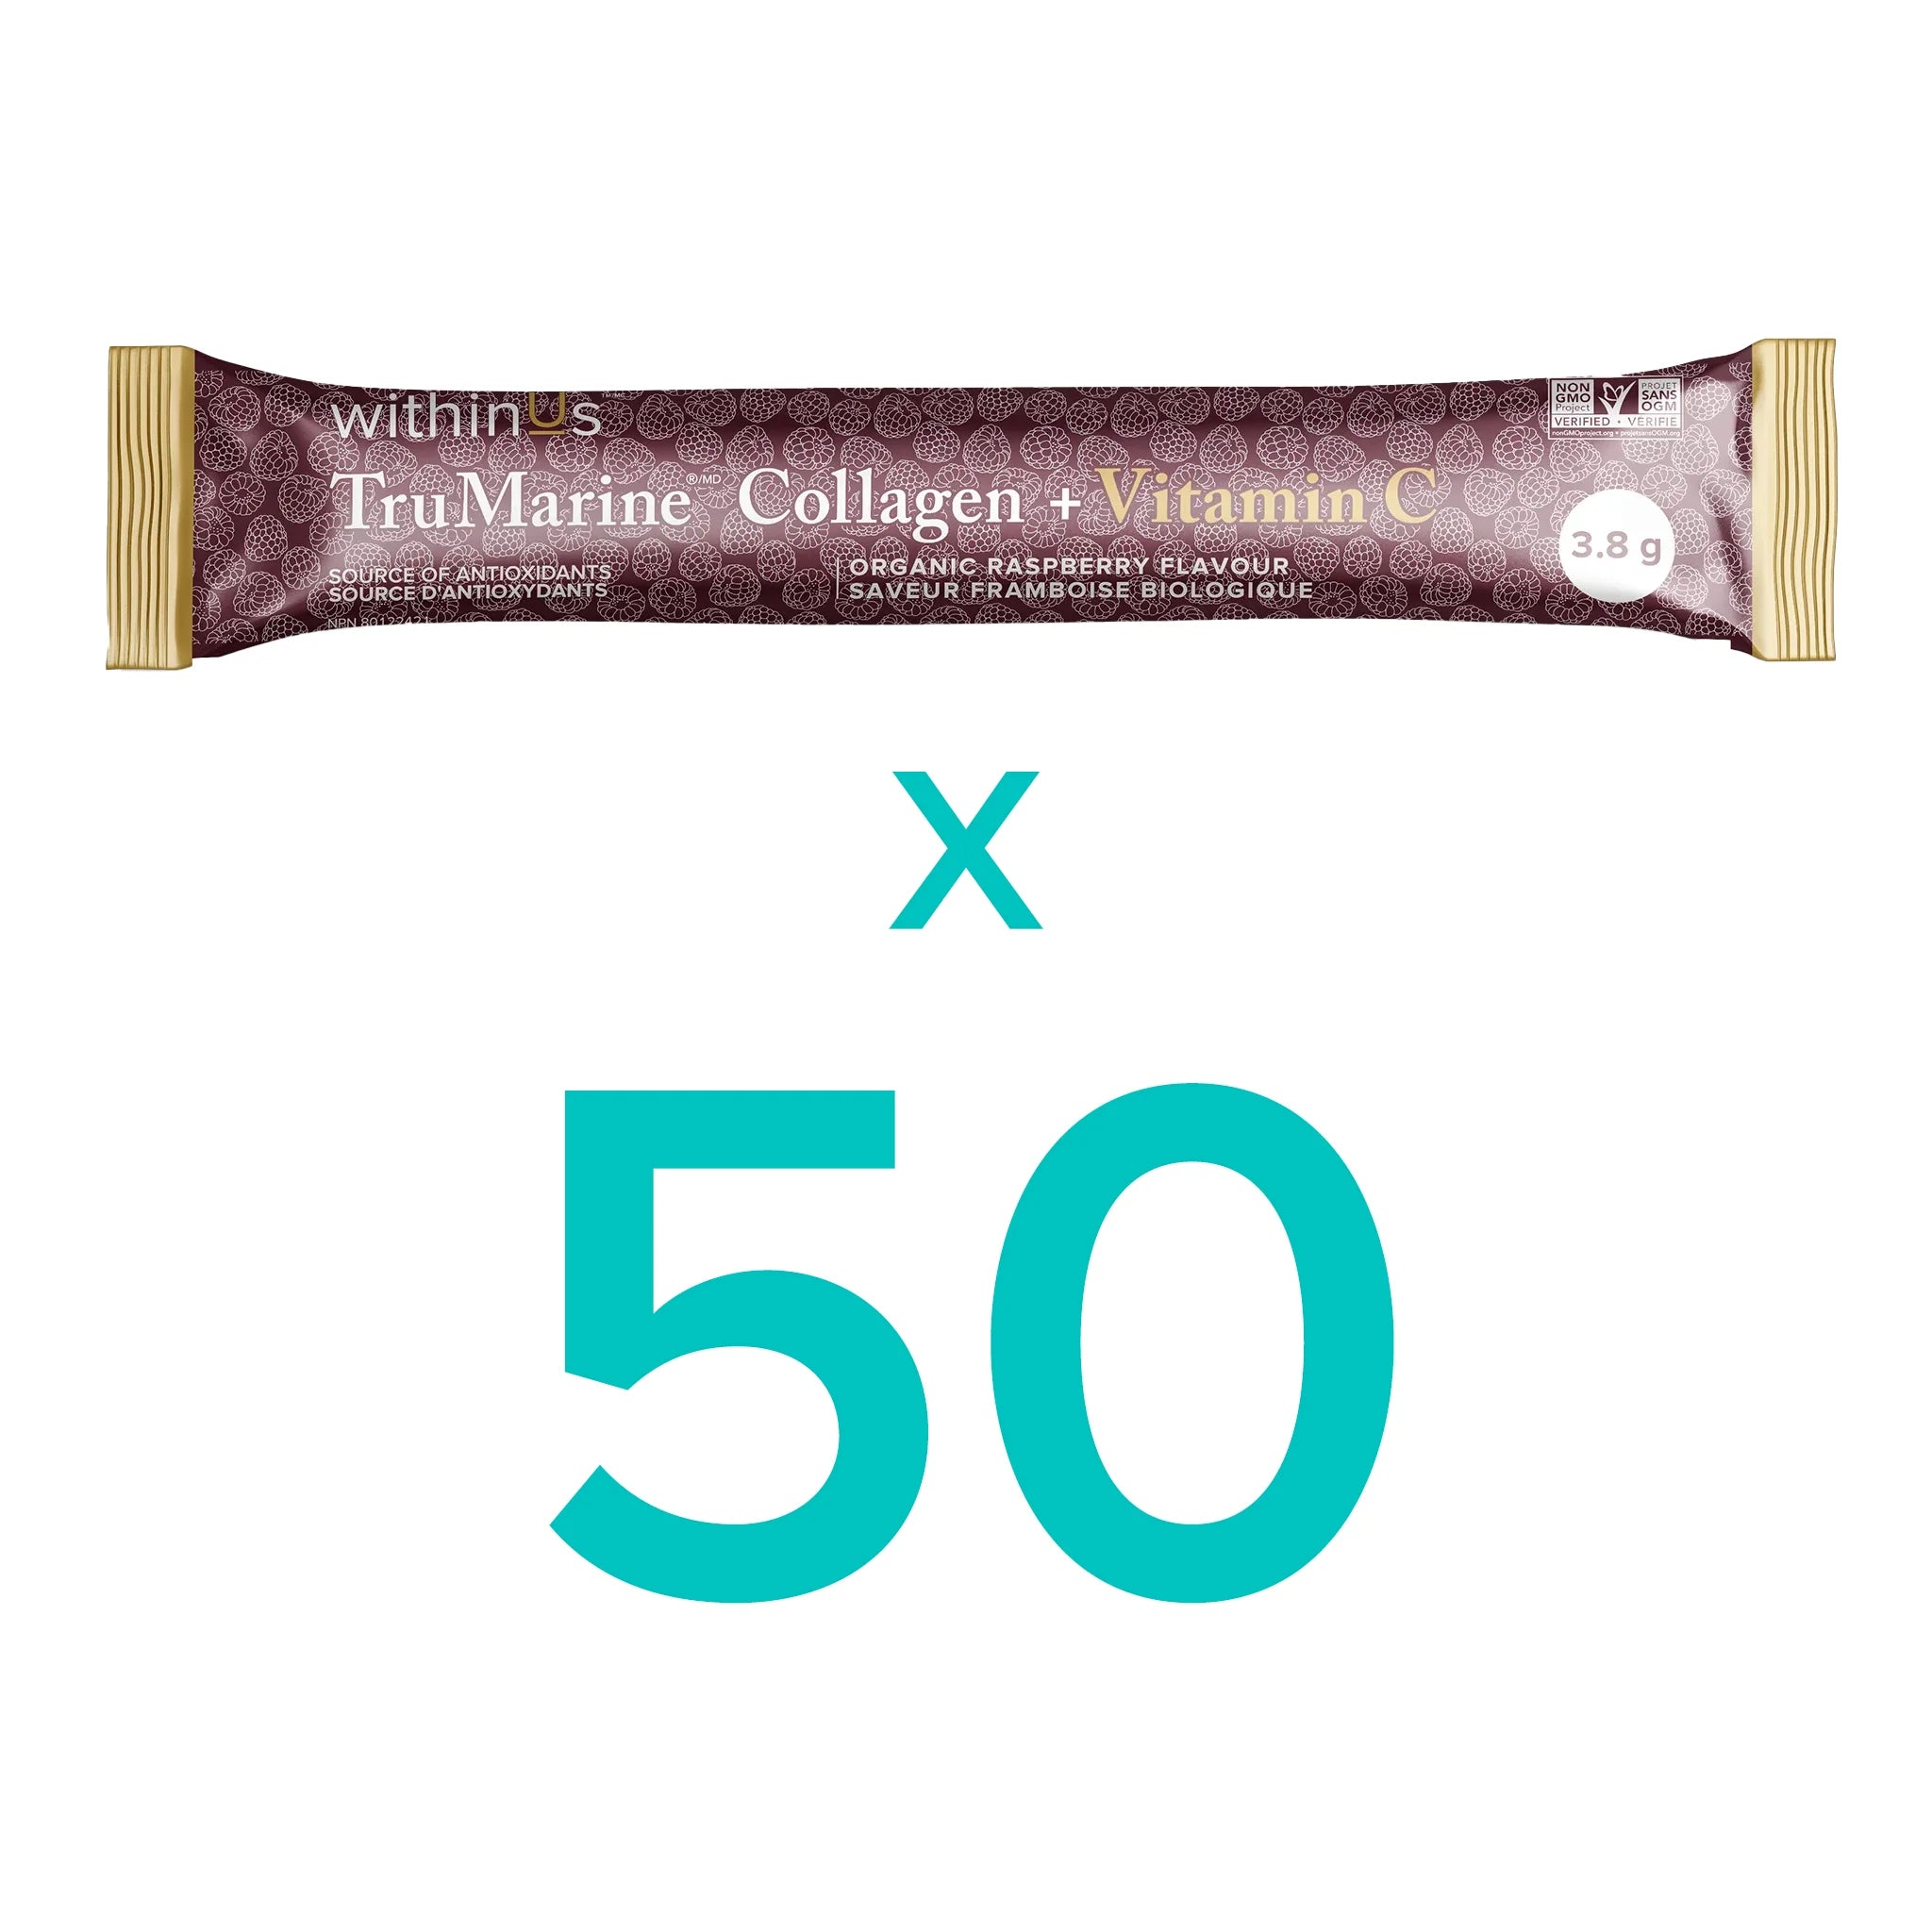 TruMarine® Collagen + Vitamin C - 50 Stick Packs